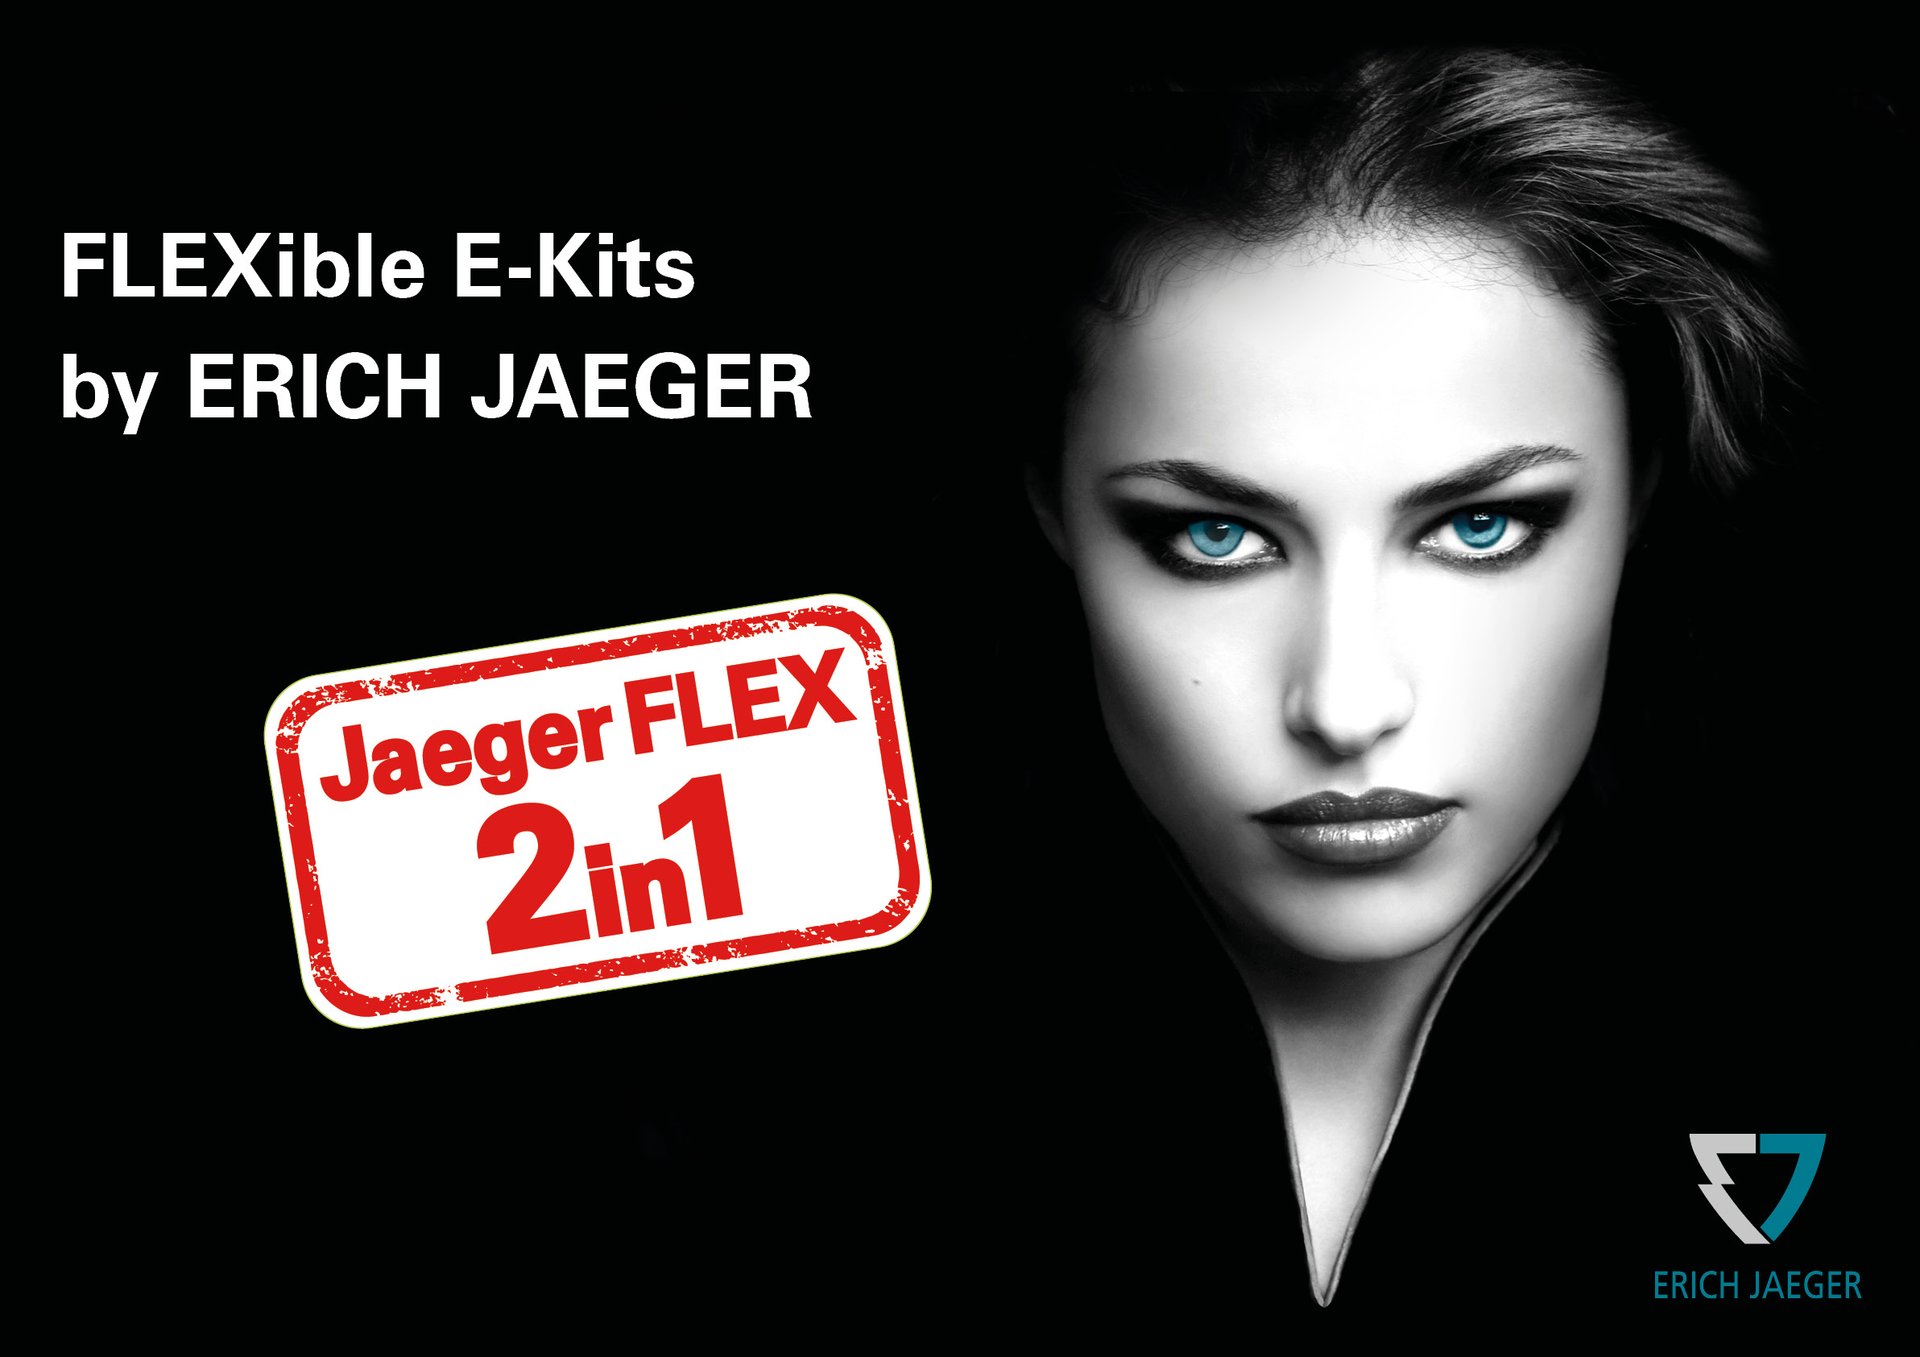 JaegerFLEX Wiring harness kits for towbars